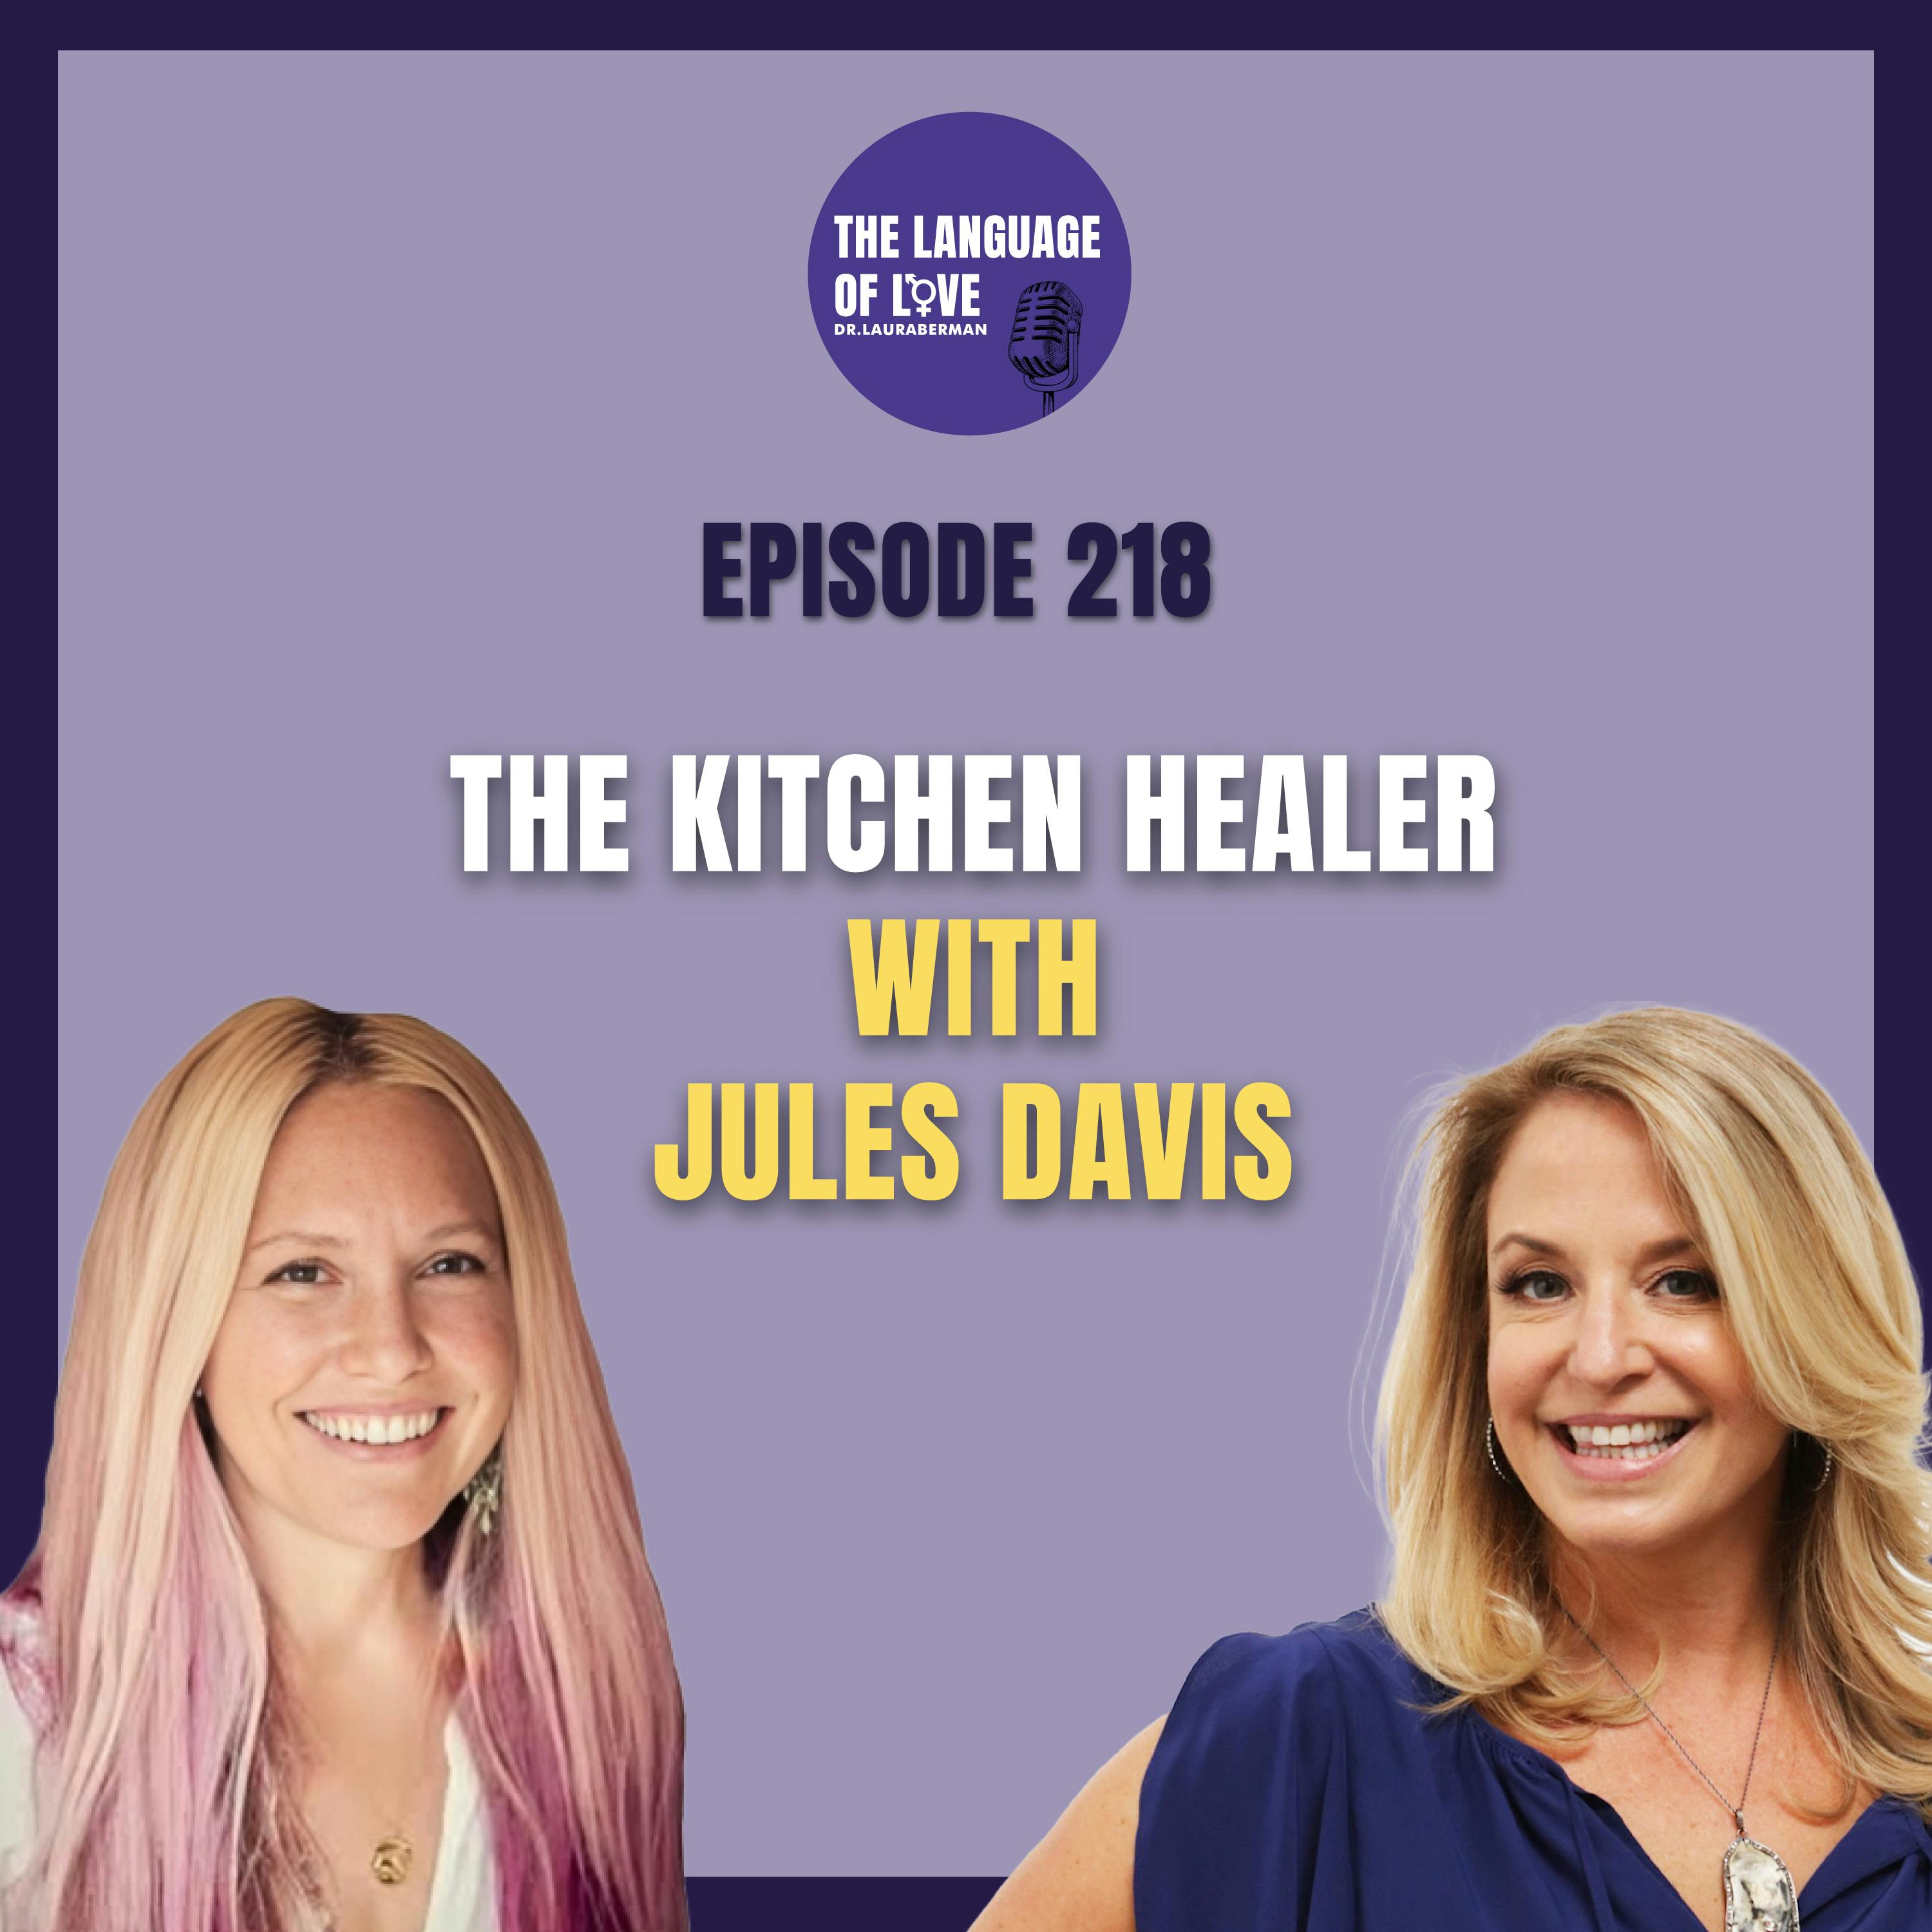 The Kitchen Healer with Jules Davis